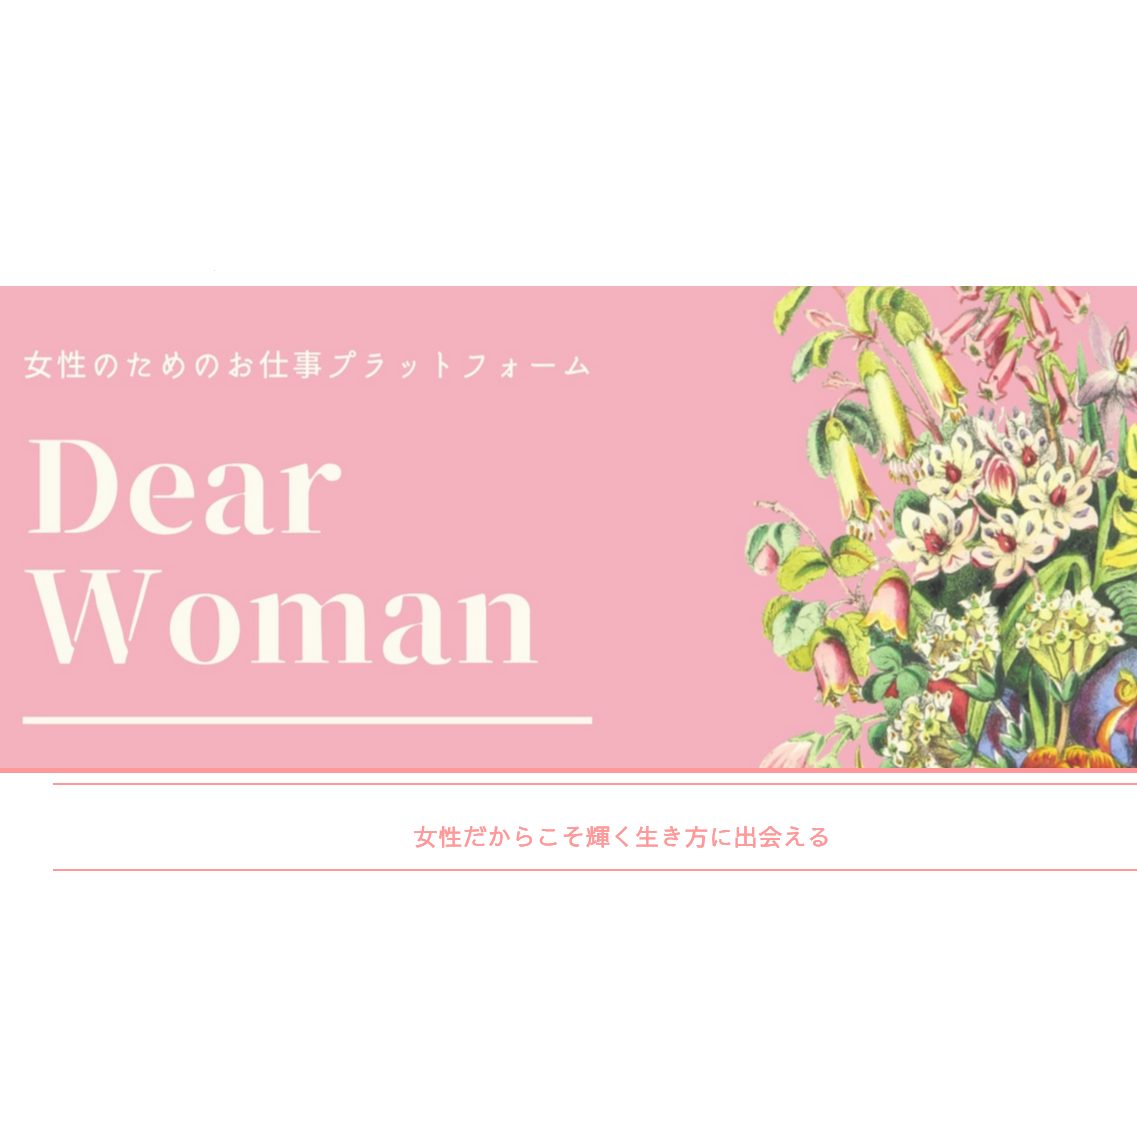 Dear Woman　スペシャルチーム